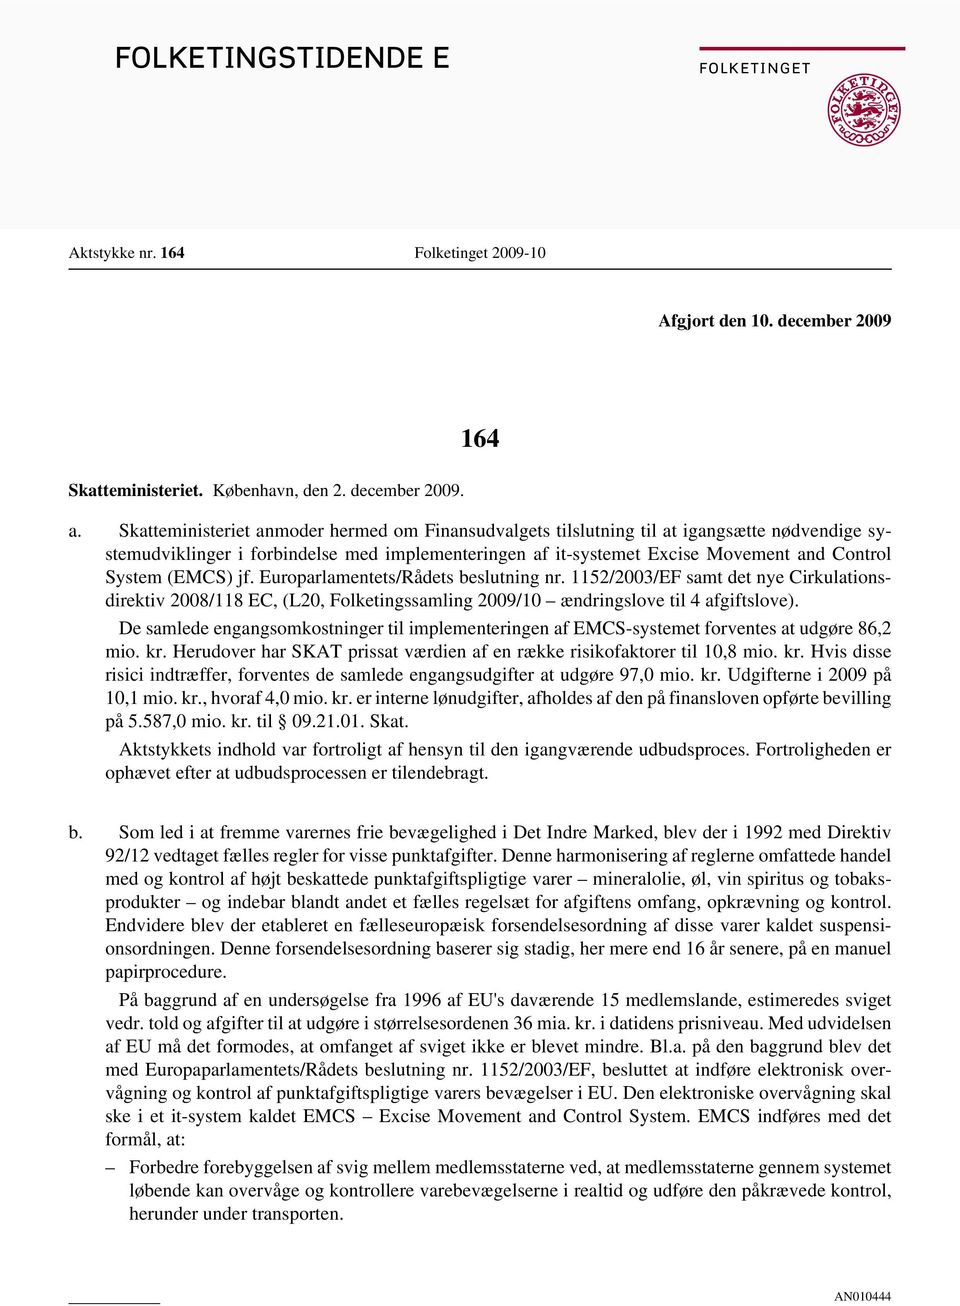 (EMCS) jf. Europarlamentets/Rådets beslutning nr. 1152/2003/EF samt det nye Cirkulationsdirektiv 2008/118 EC, (L20, Folketingssamling 2009/10 ændringslove til 4 afgiftslove).